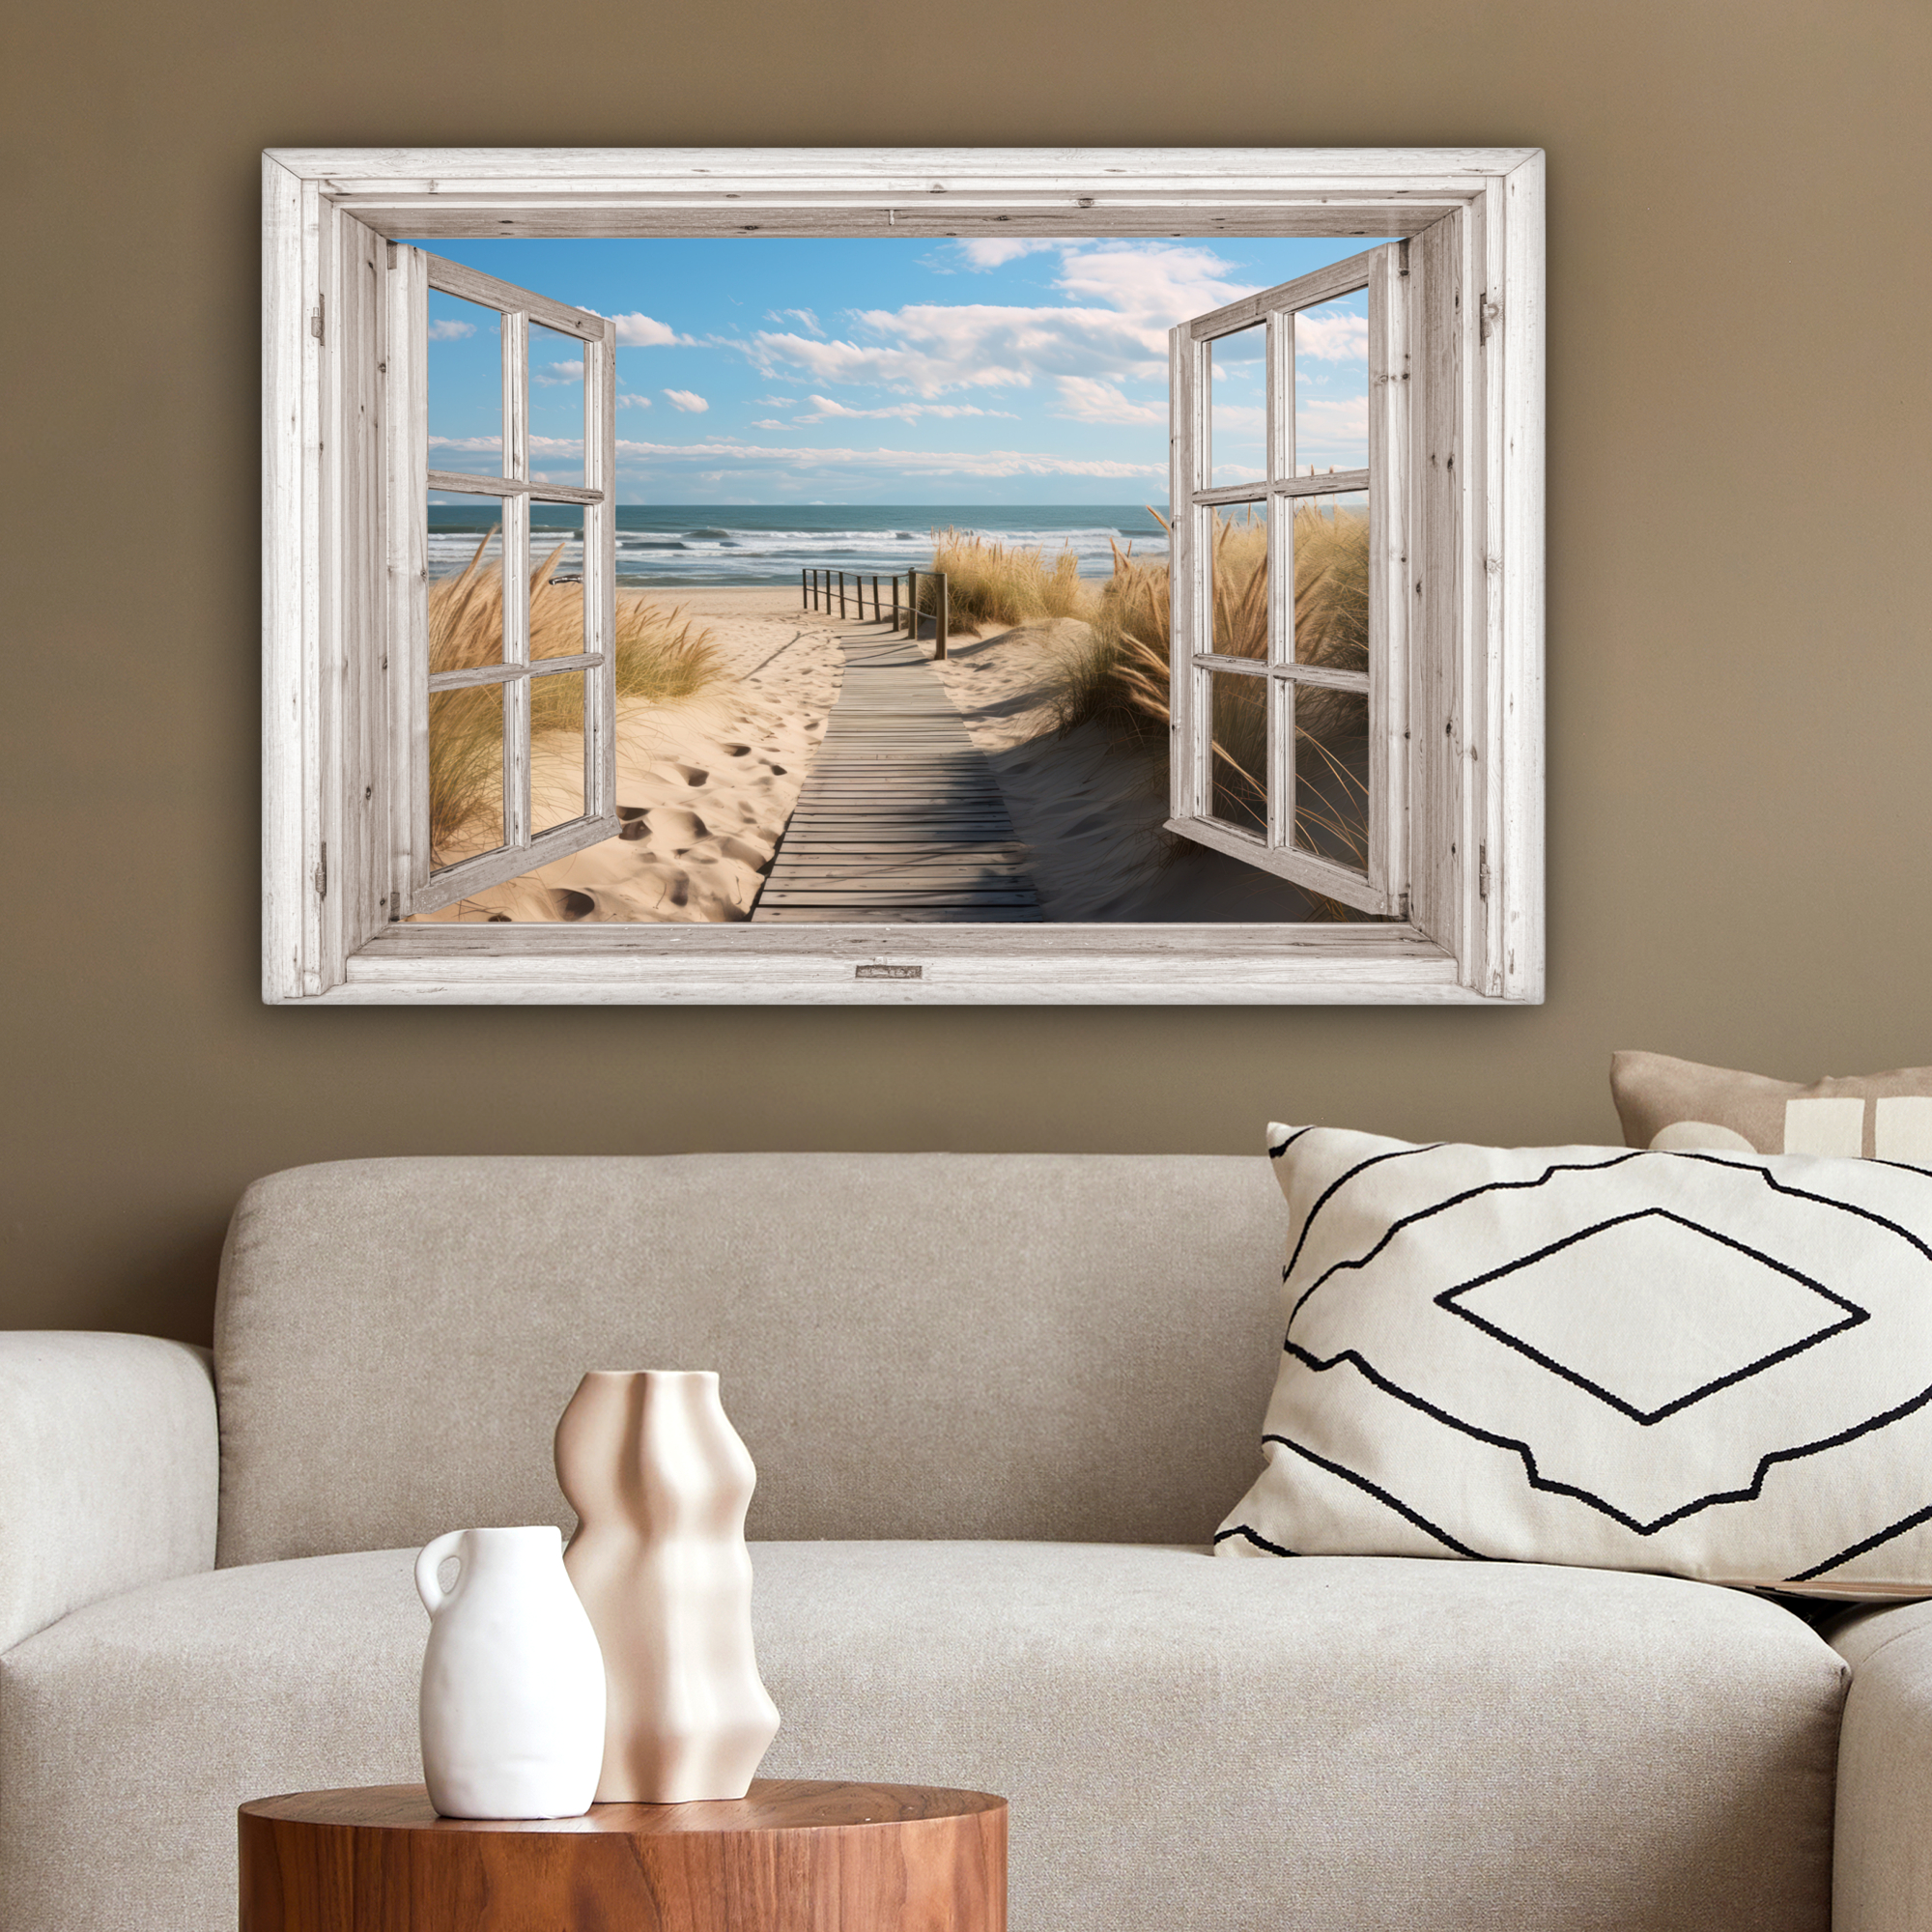 Tableau sur toile - Fenêtre - Mer - Côte - Nature - Vue à travers - Plage - Mer des Wadden-2